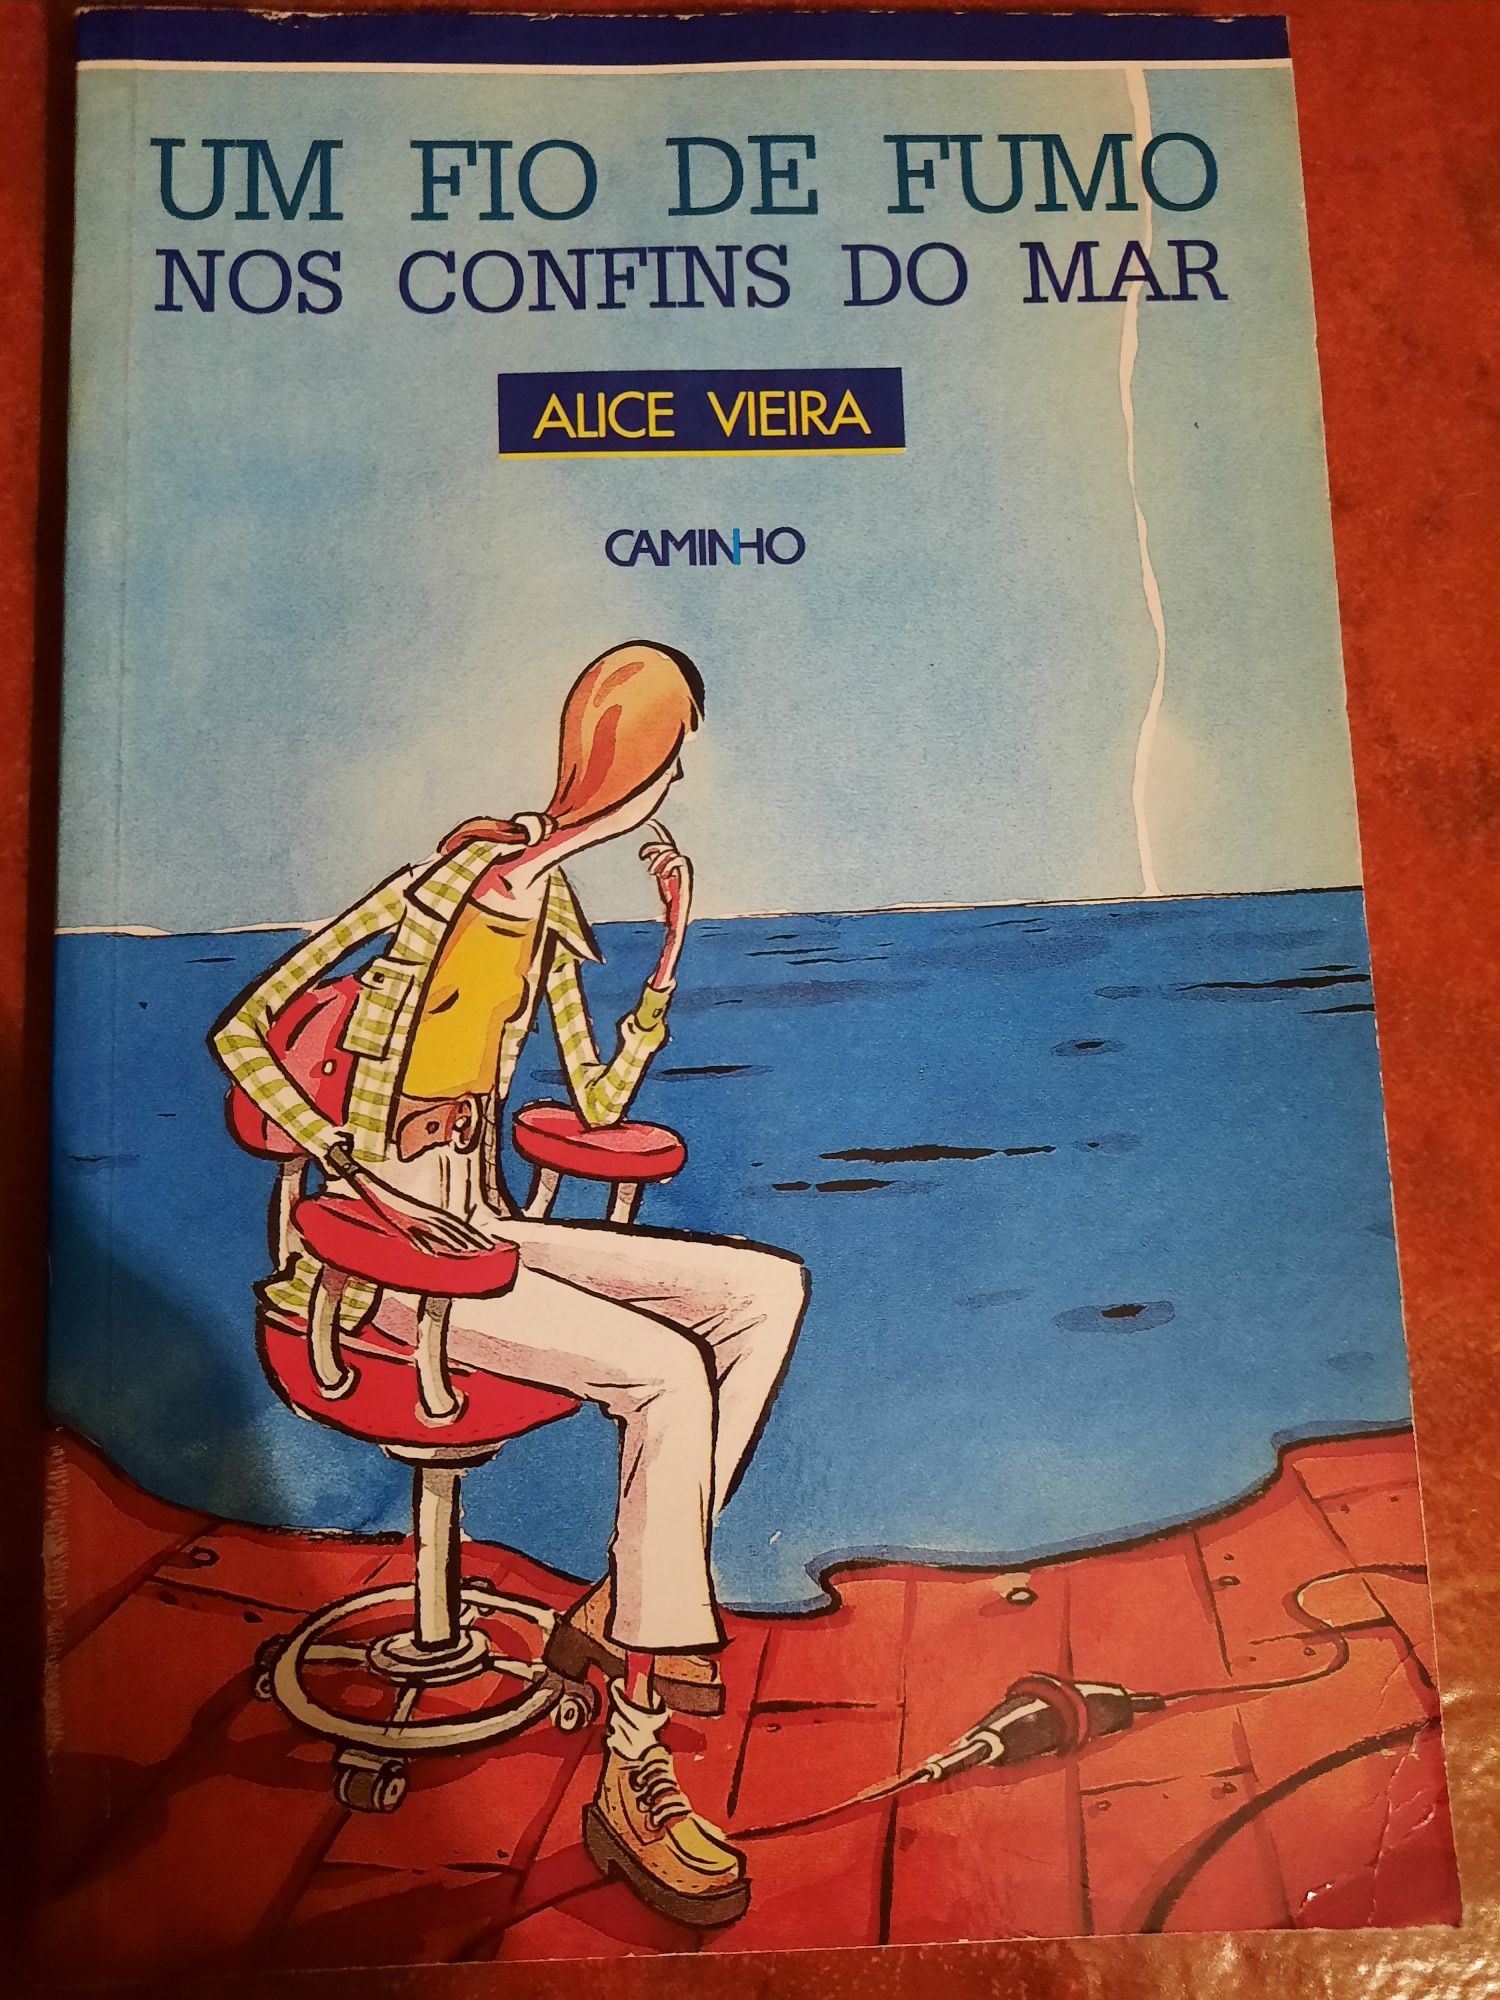 Livro "Um fio de fumo nos confins do mar" de Alice Vieira